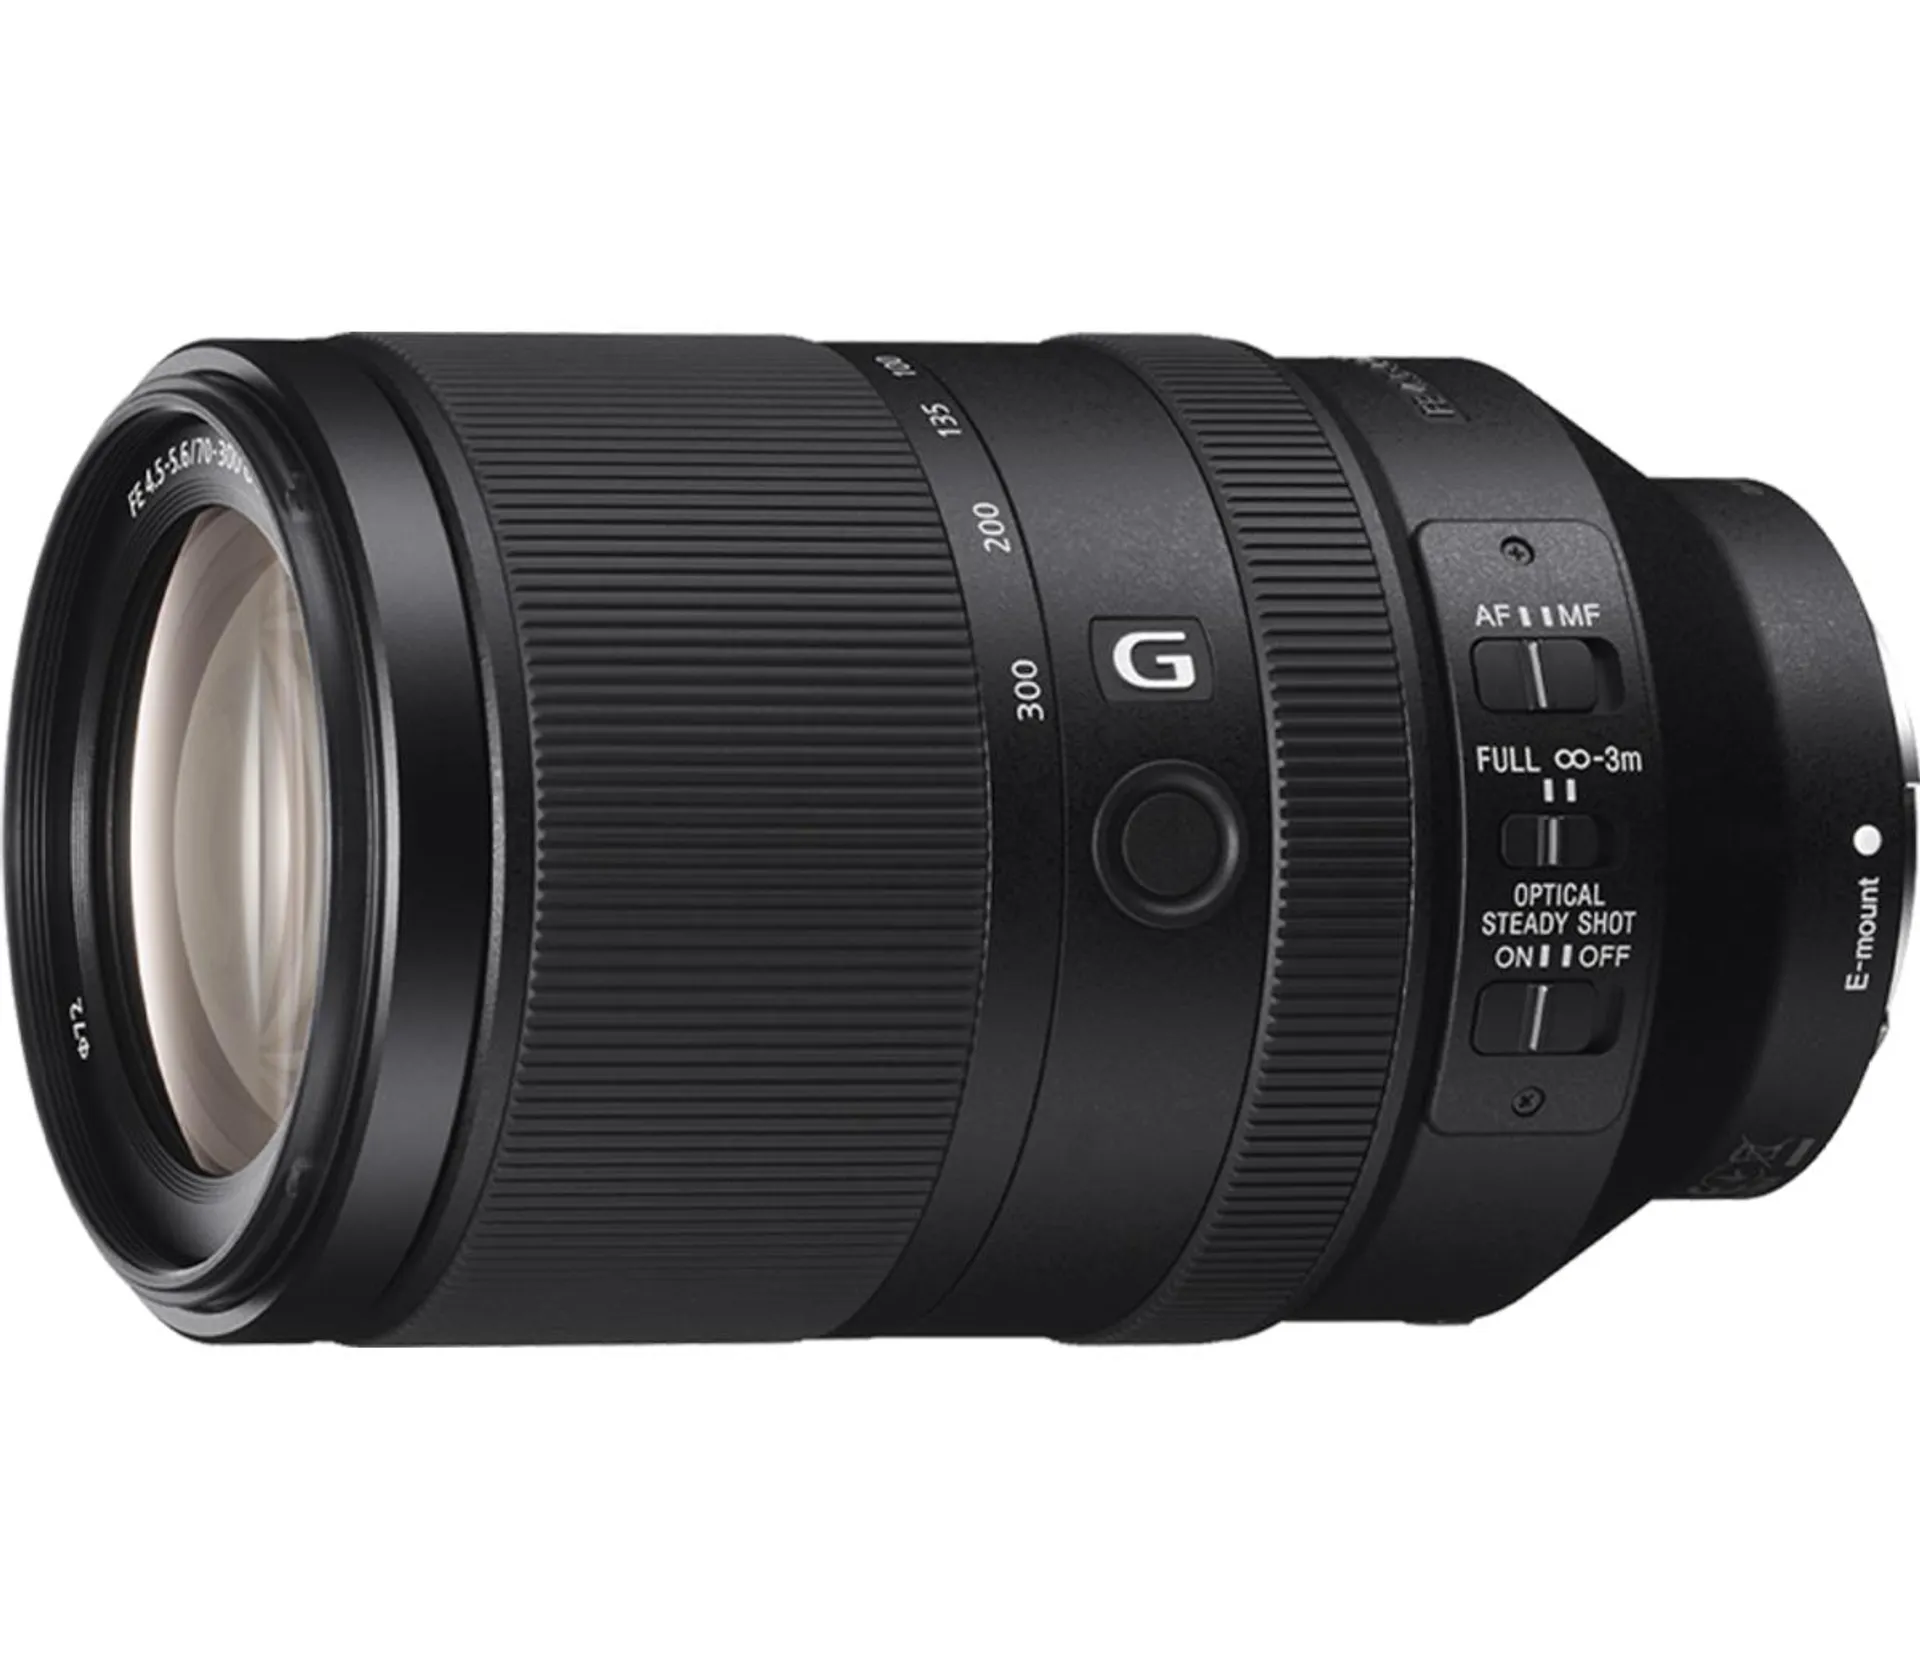 FE 70-300mm F4.5-5.6 G OSS Full-frame Telephoto Zoom G Lens with Optical SteadyShot